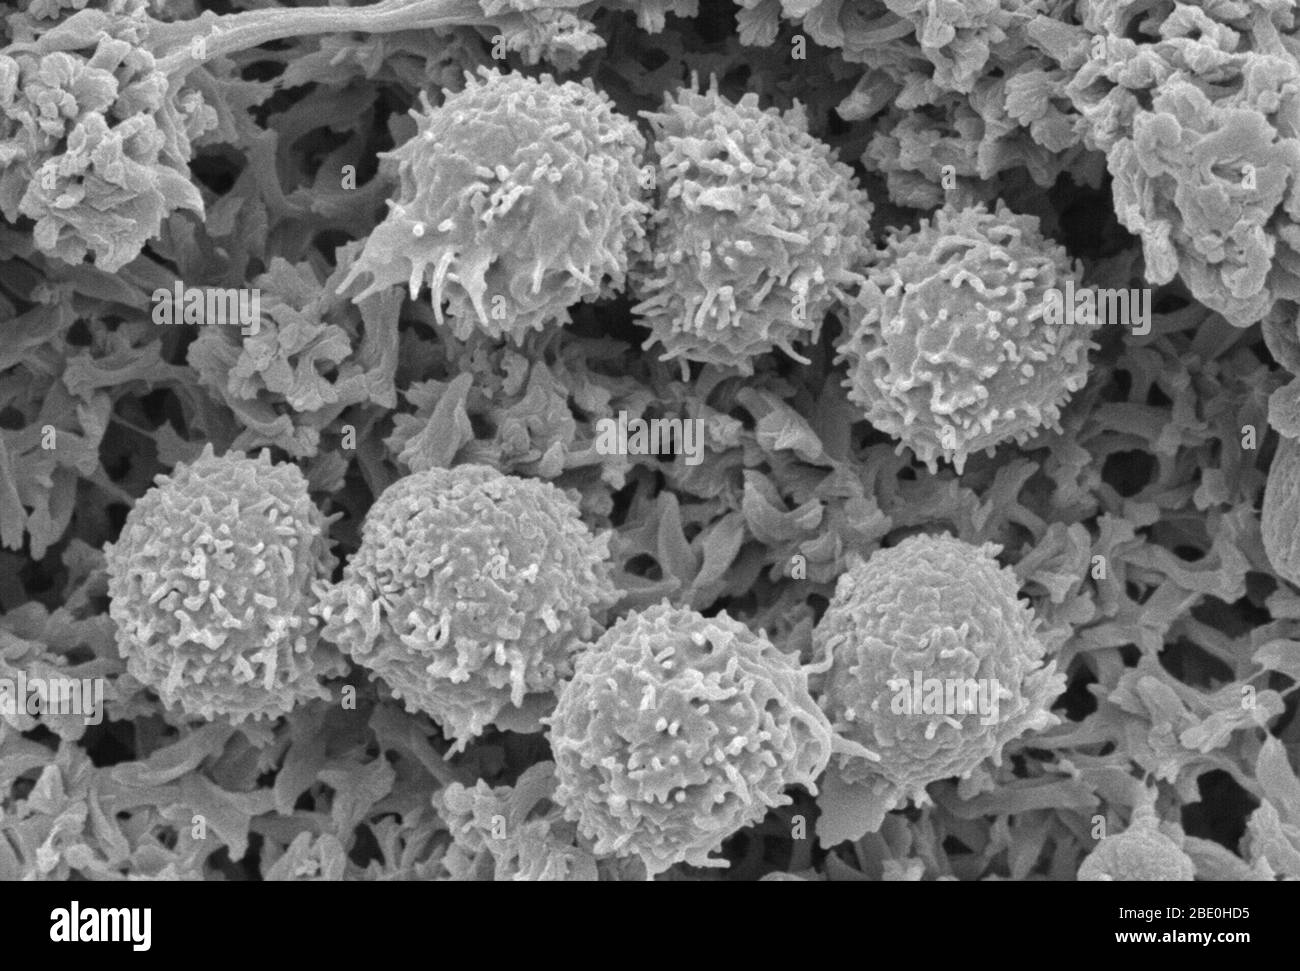 Exploración del micrografo de electrones (SEM) que muestra linfocitos (glóbulos blancos). Un linfocito es uno de los subtipos de glóbulos blancos en el sistema inmunitario de un vertebrado. Los linfocitos incluyen células asesinas naturales (células NK) (que funcionan en inmunidad innata citotóxica mediada por células), células T (para inmunidad adaptativa citotóxica mediada por células) y células B (para inmunidad adaptativa humoral impulsada por anticuerpos). Son el principal tipo de célula que se encuentra en la linfa, lo que provocó el nombre de linfocito. Ampliación desconocida. Foto de stock